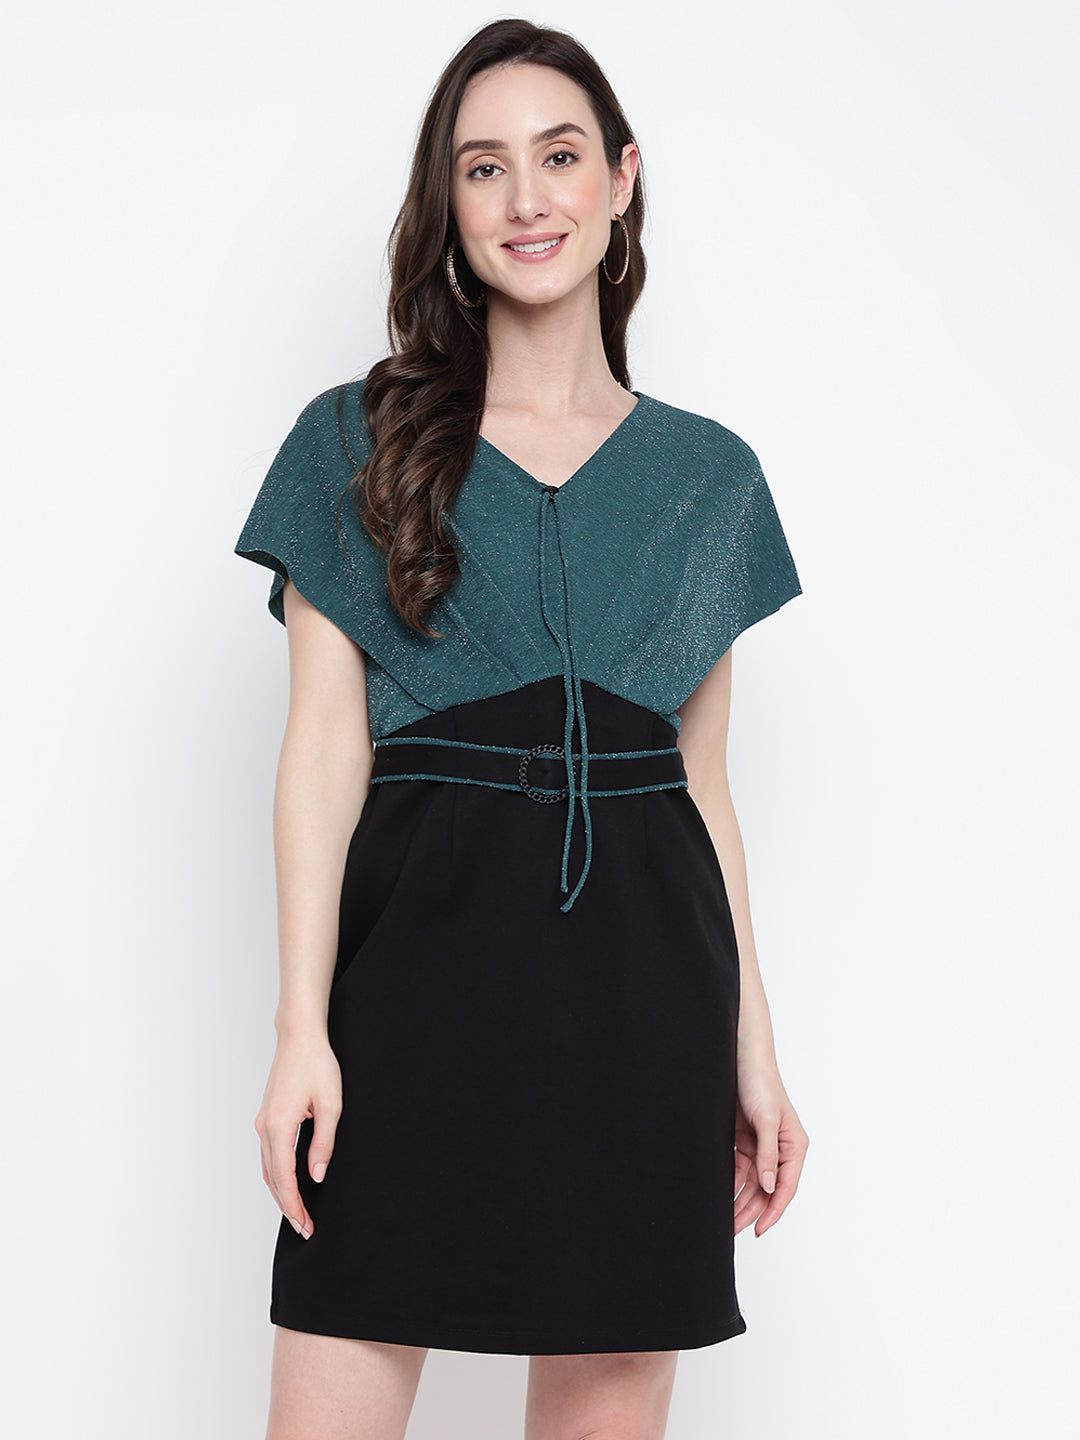 Greenbottle Cap Sleeve Solid 2 Fir 1 Dress